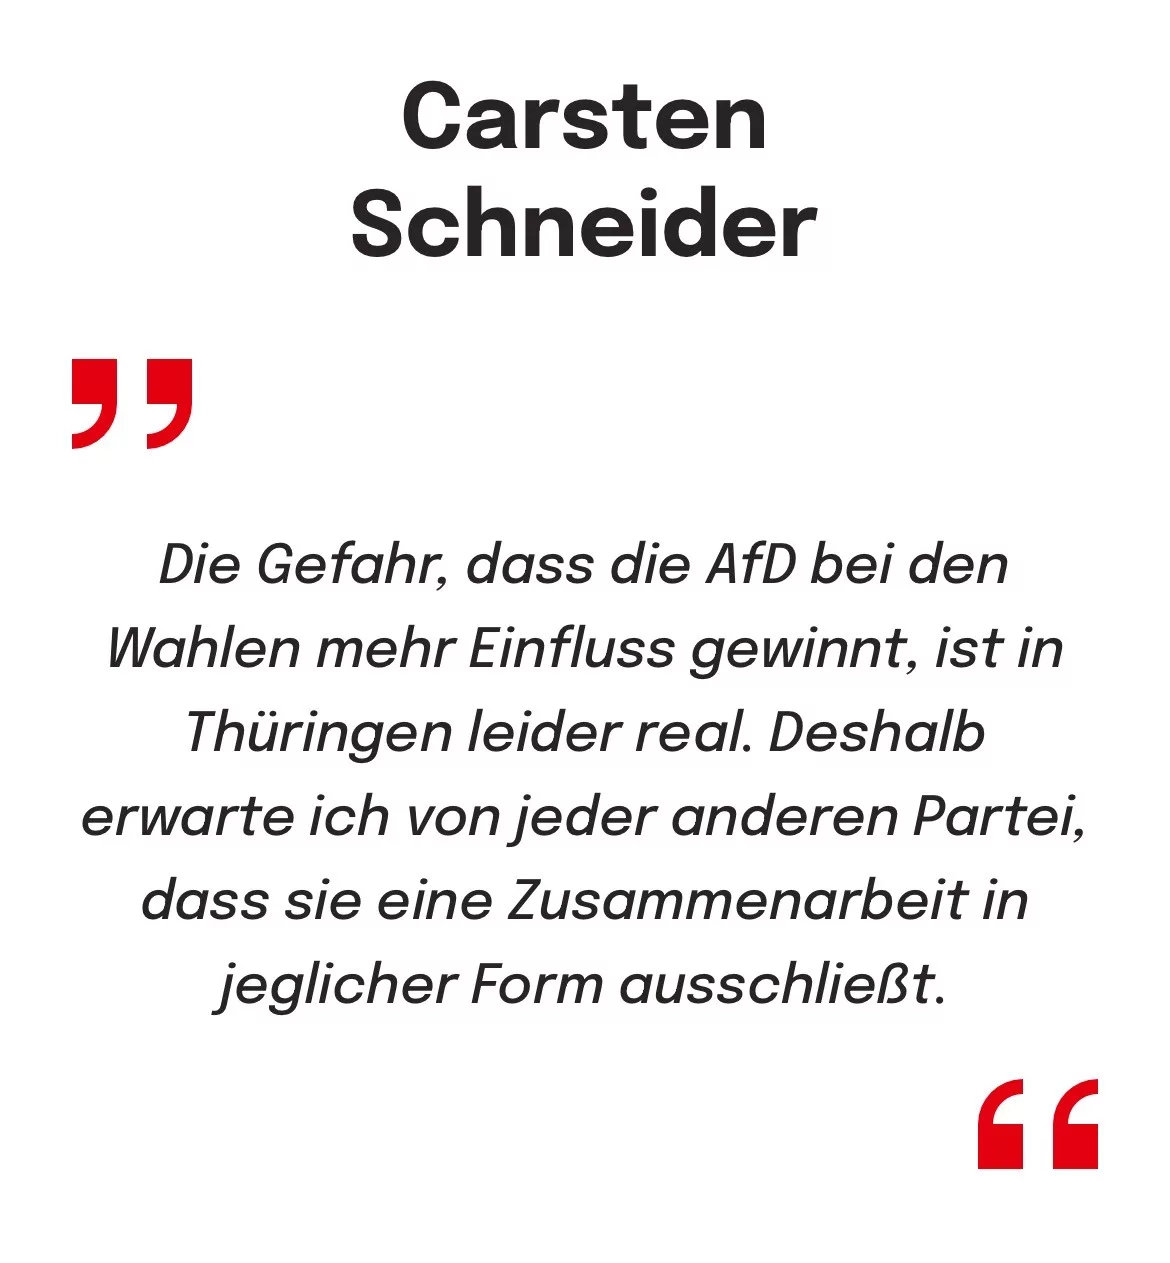 Carsten Schneider, Ostbeauftragte der Bundesregierung zur Gefahr des steigenden Einflusses der AfD in Thüringen und dem erwarteten Ablehnen von Zusammenarbeit der anderen Pareien.,